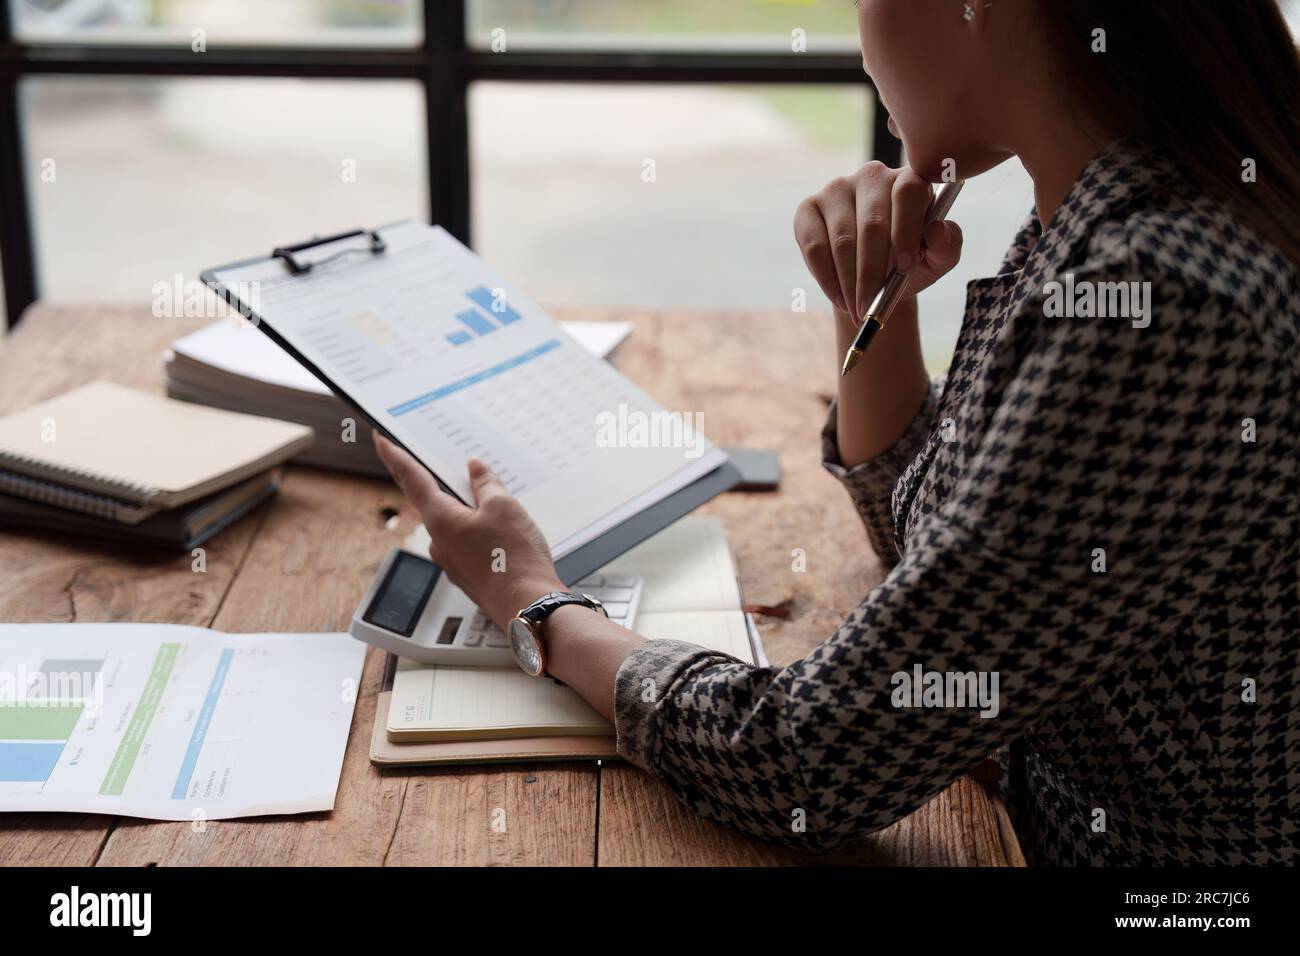 Analisi professionale del personale aziendale e pianificazione della strategia di marketing nel luogo di lavoro contabile Foto Stock